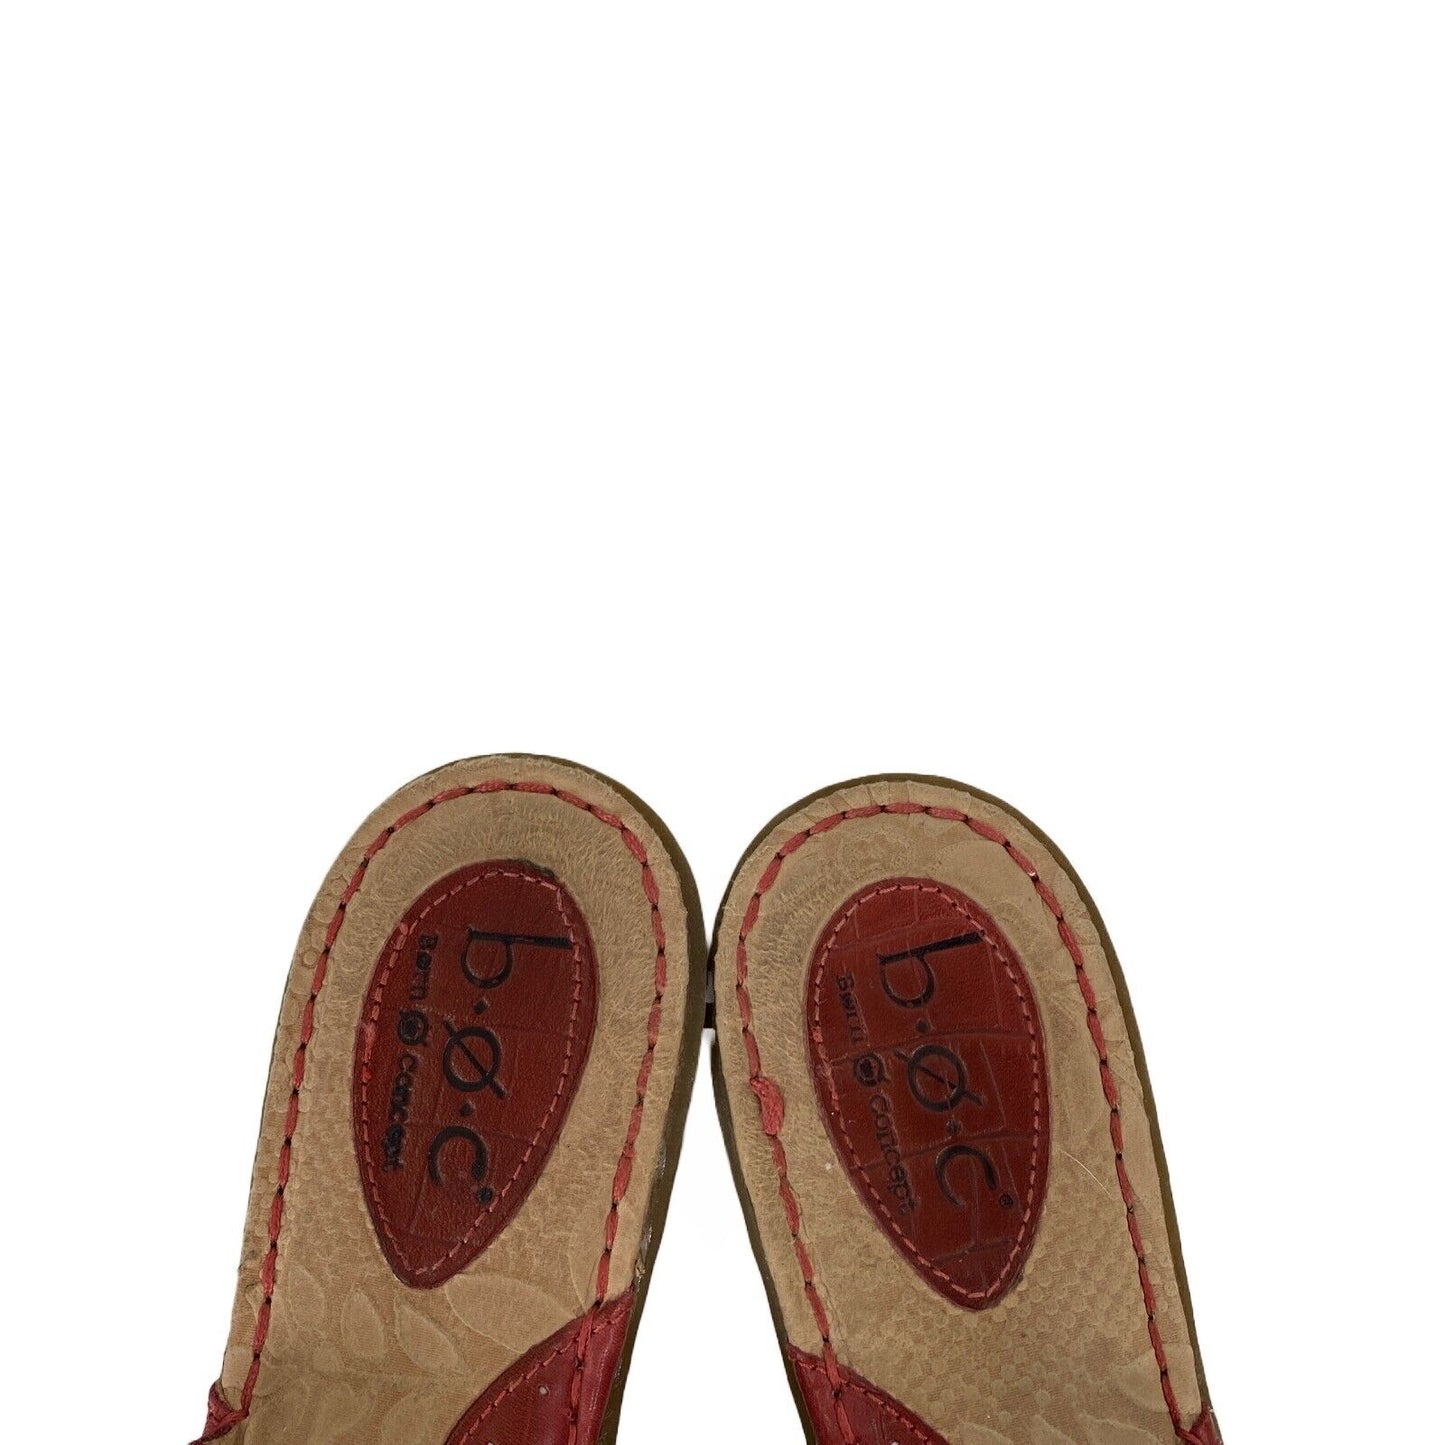 BOC Women's Pink Leather Slip On Slide Sandals - 8